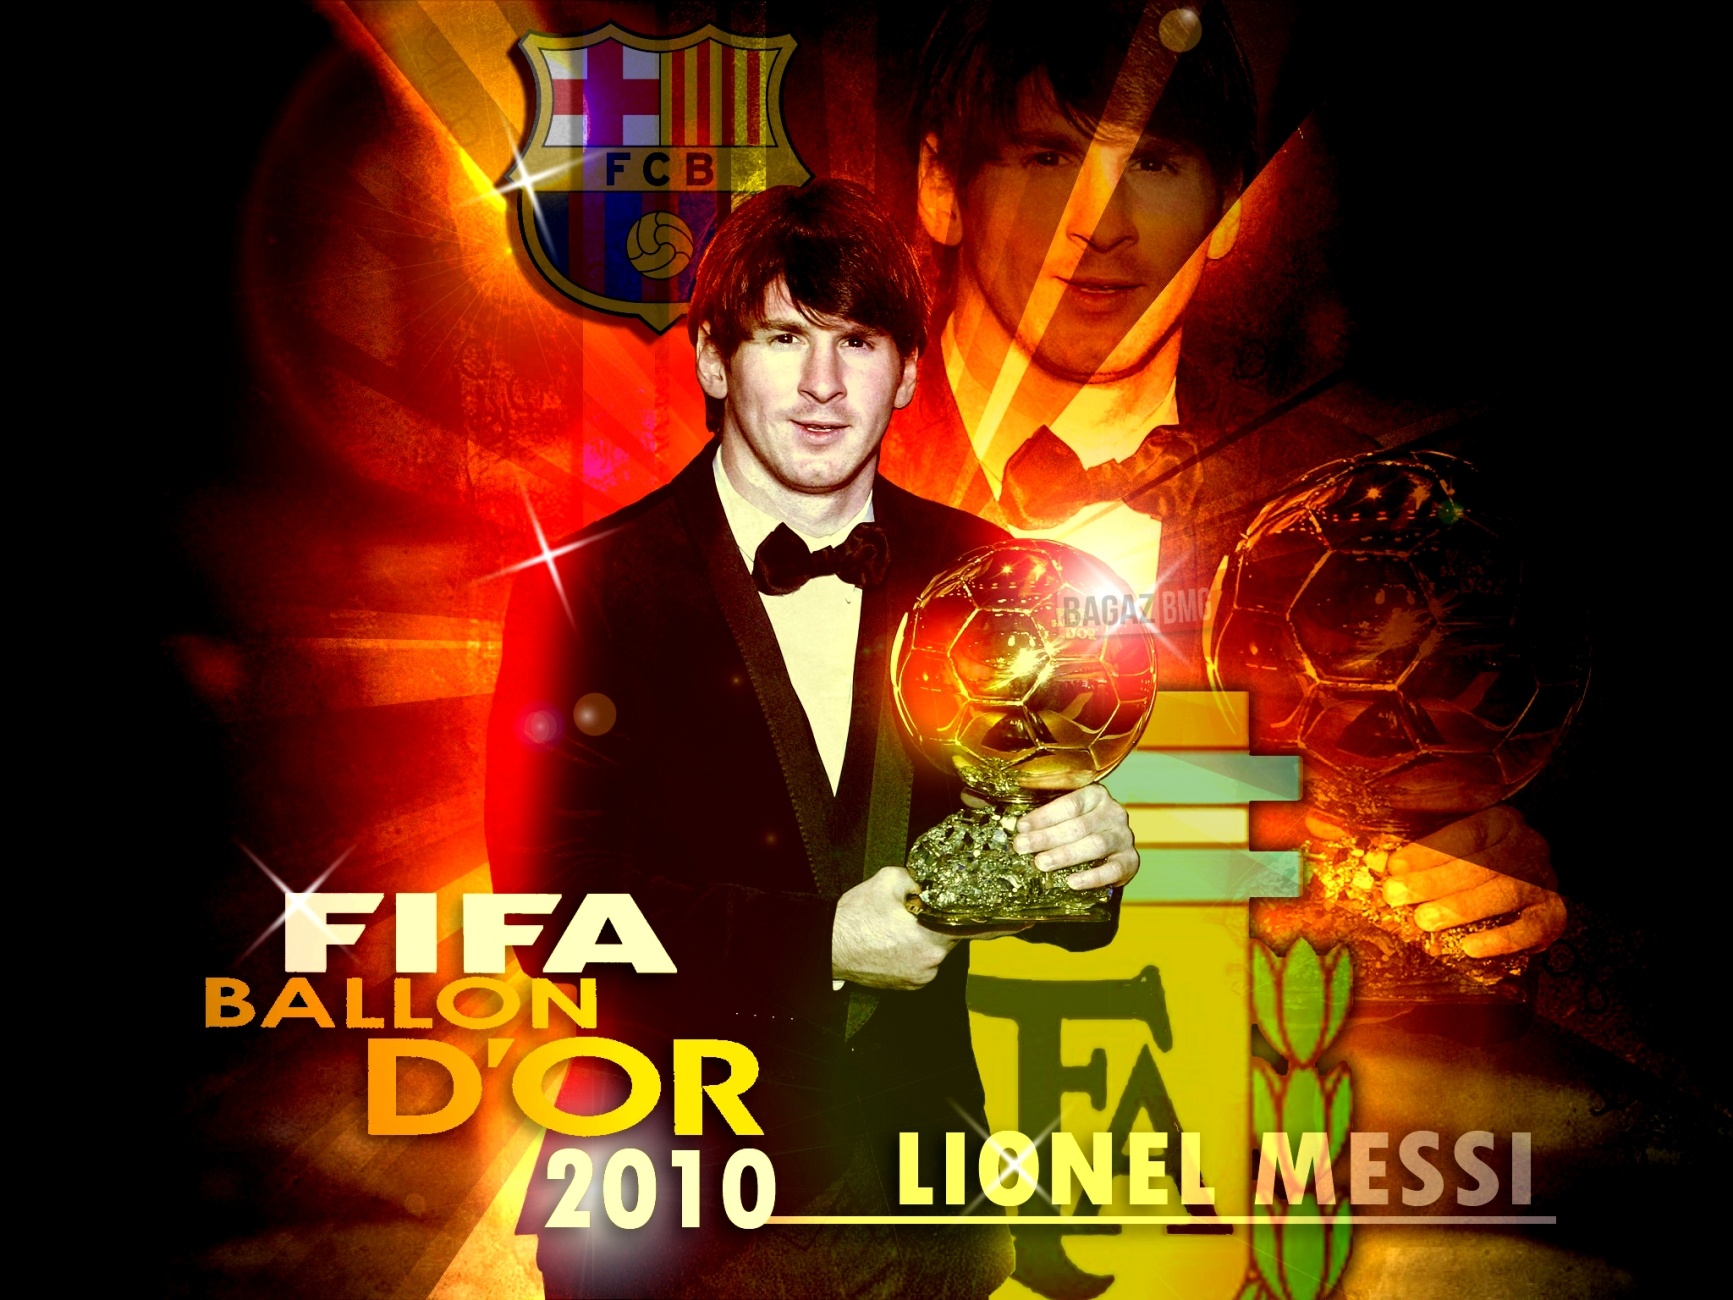 Lionel Messi Fifa Ballon D Or Barcelona Fc Wallpaper